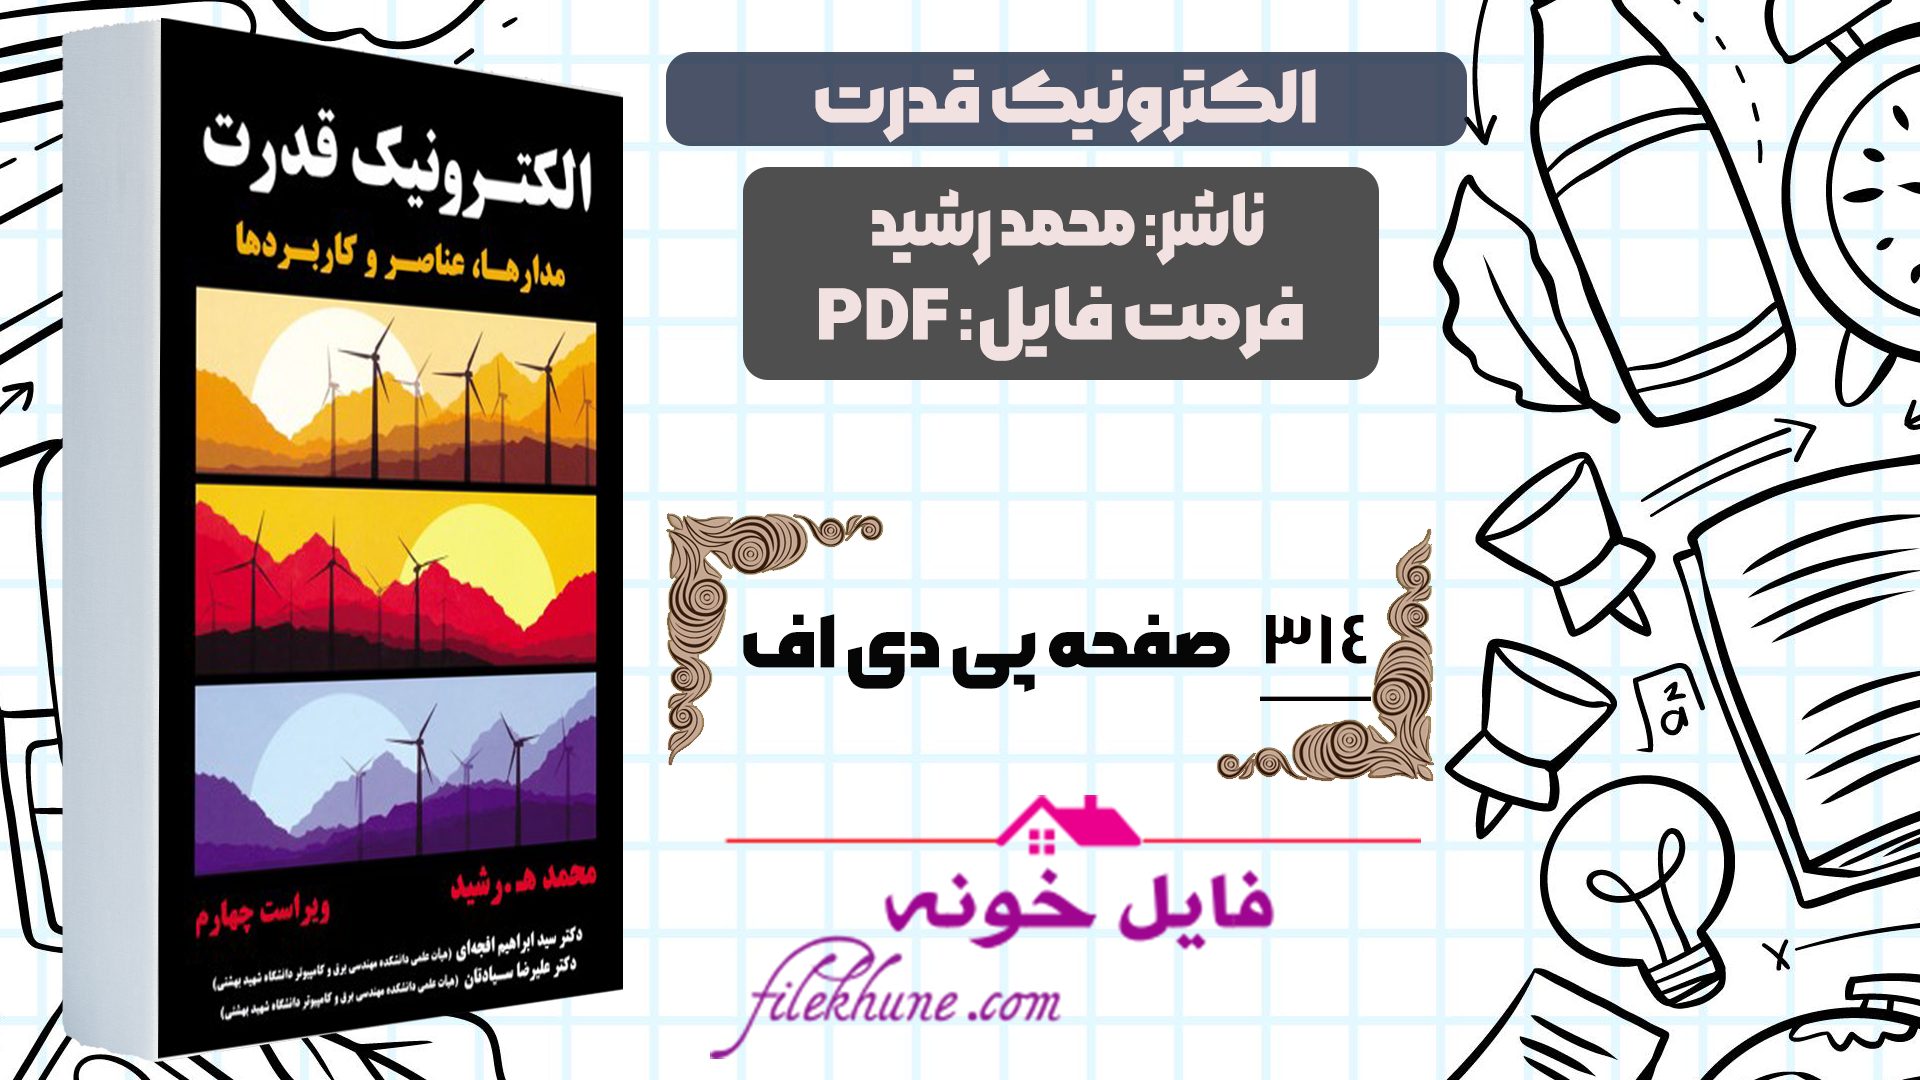 دانلود کتاب الکترونیک قدرت محمد رشید PDF